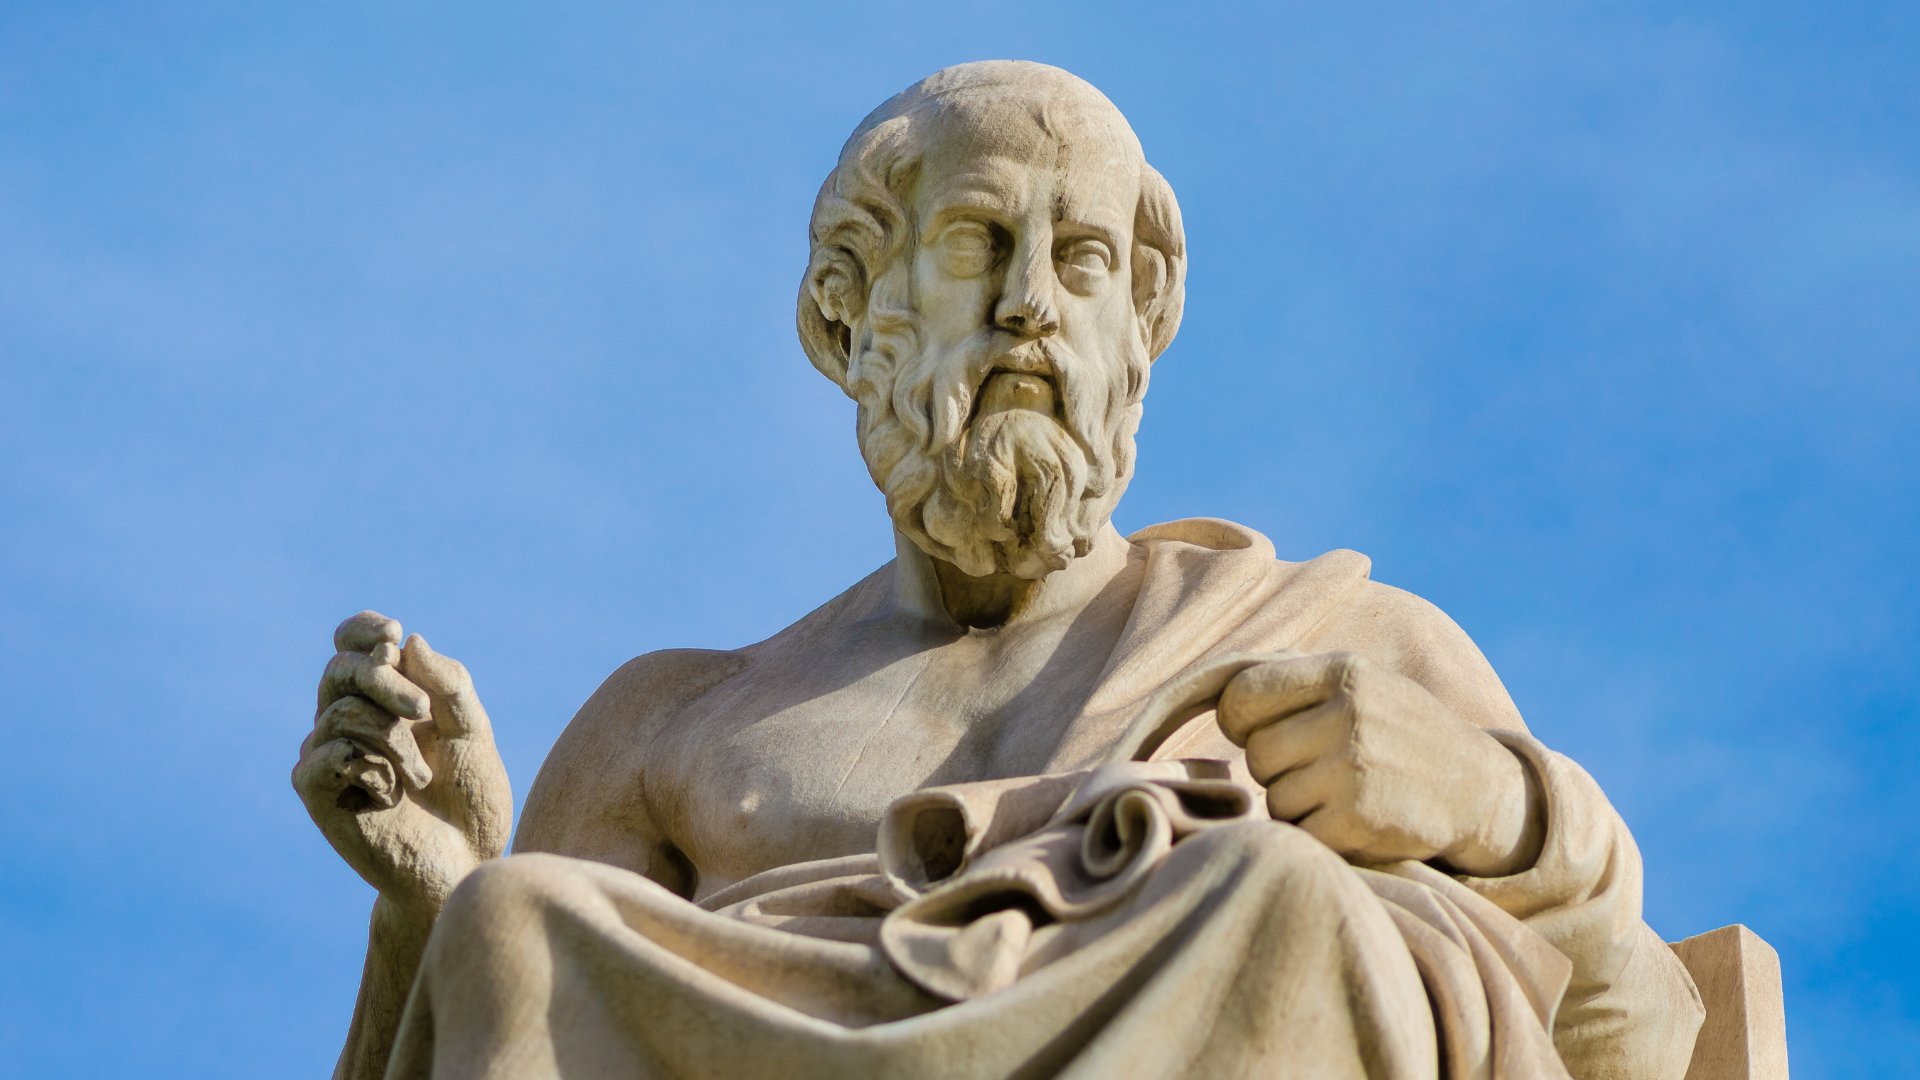 Великий древнегреческий философ